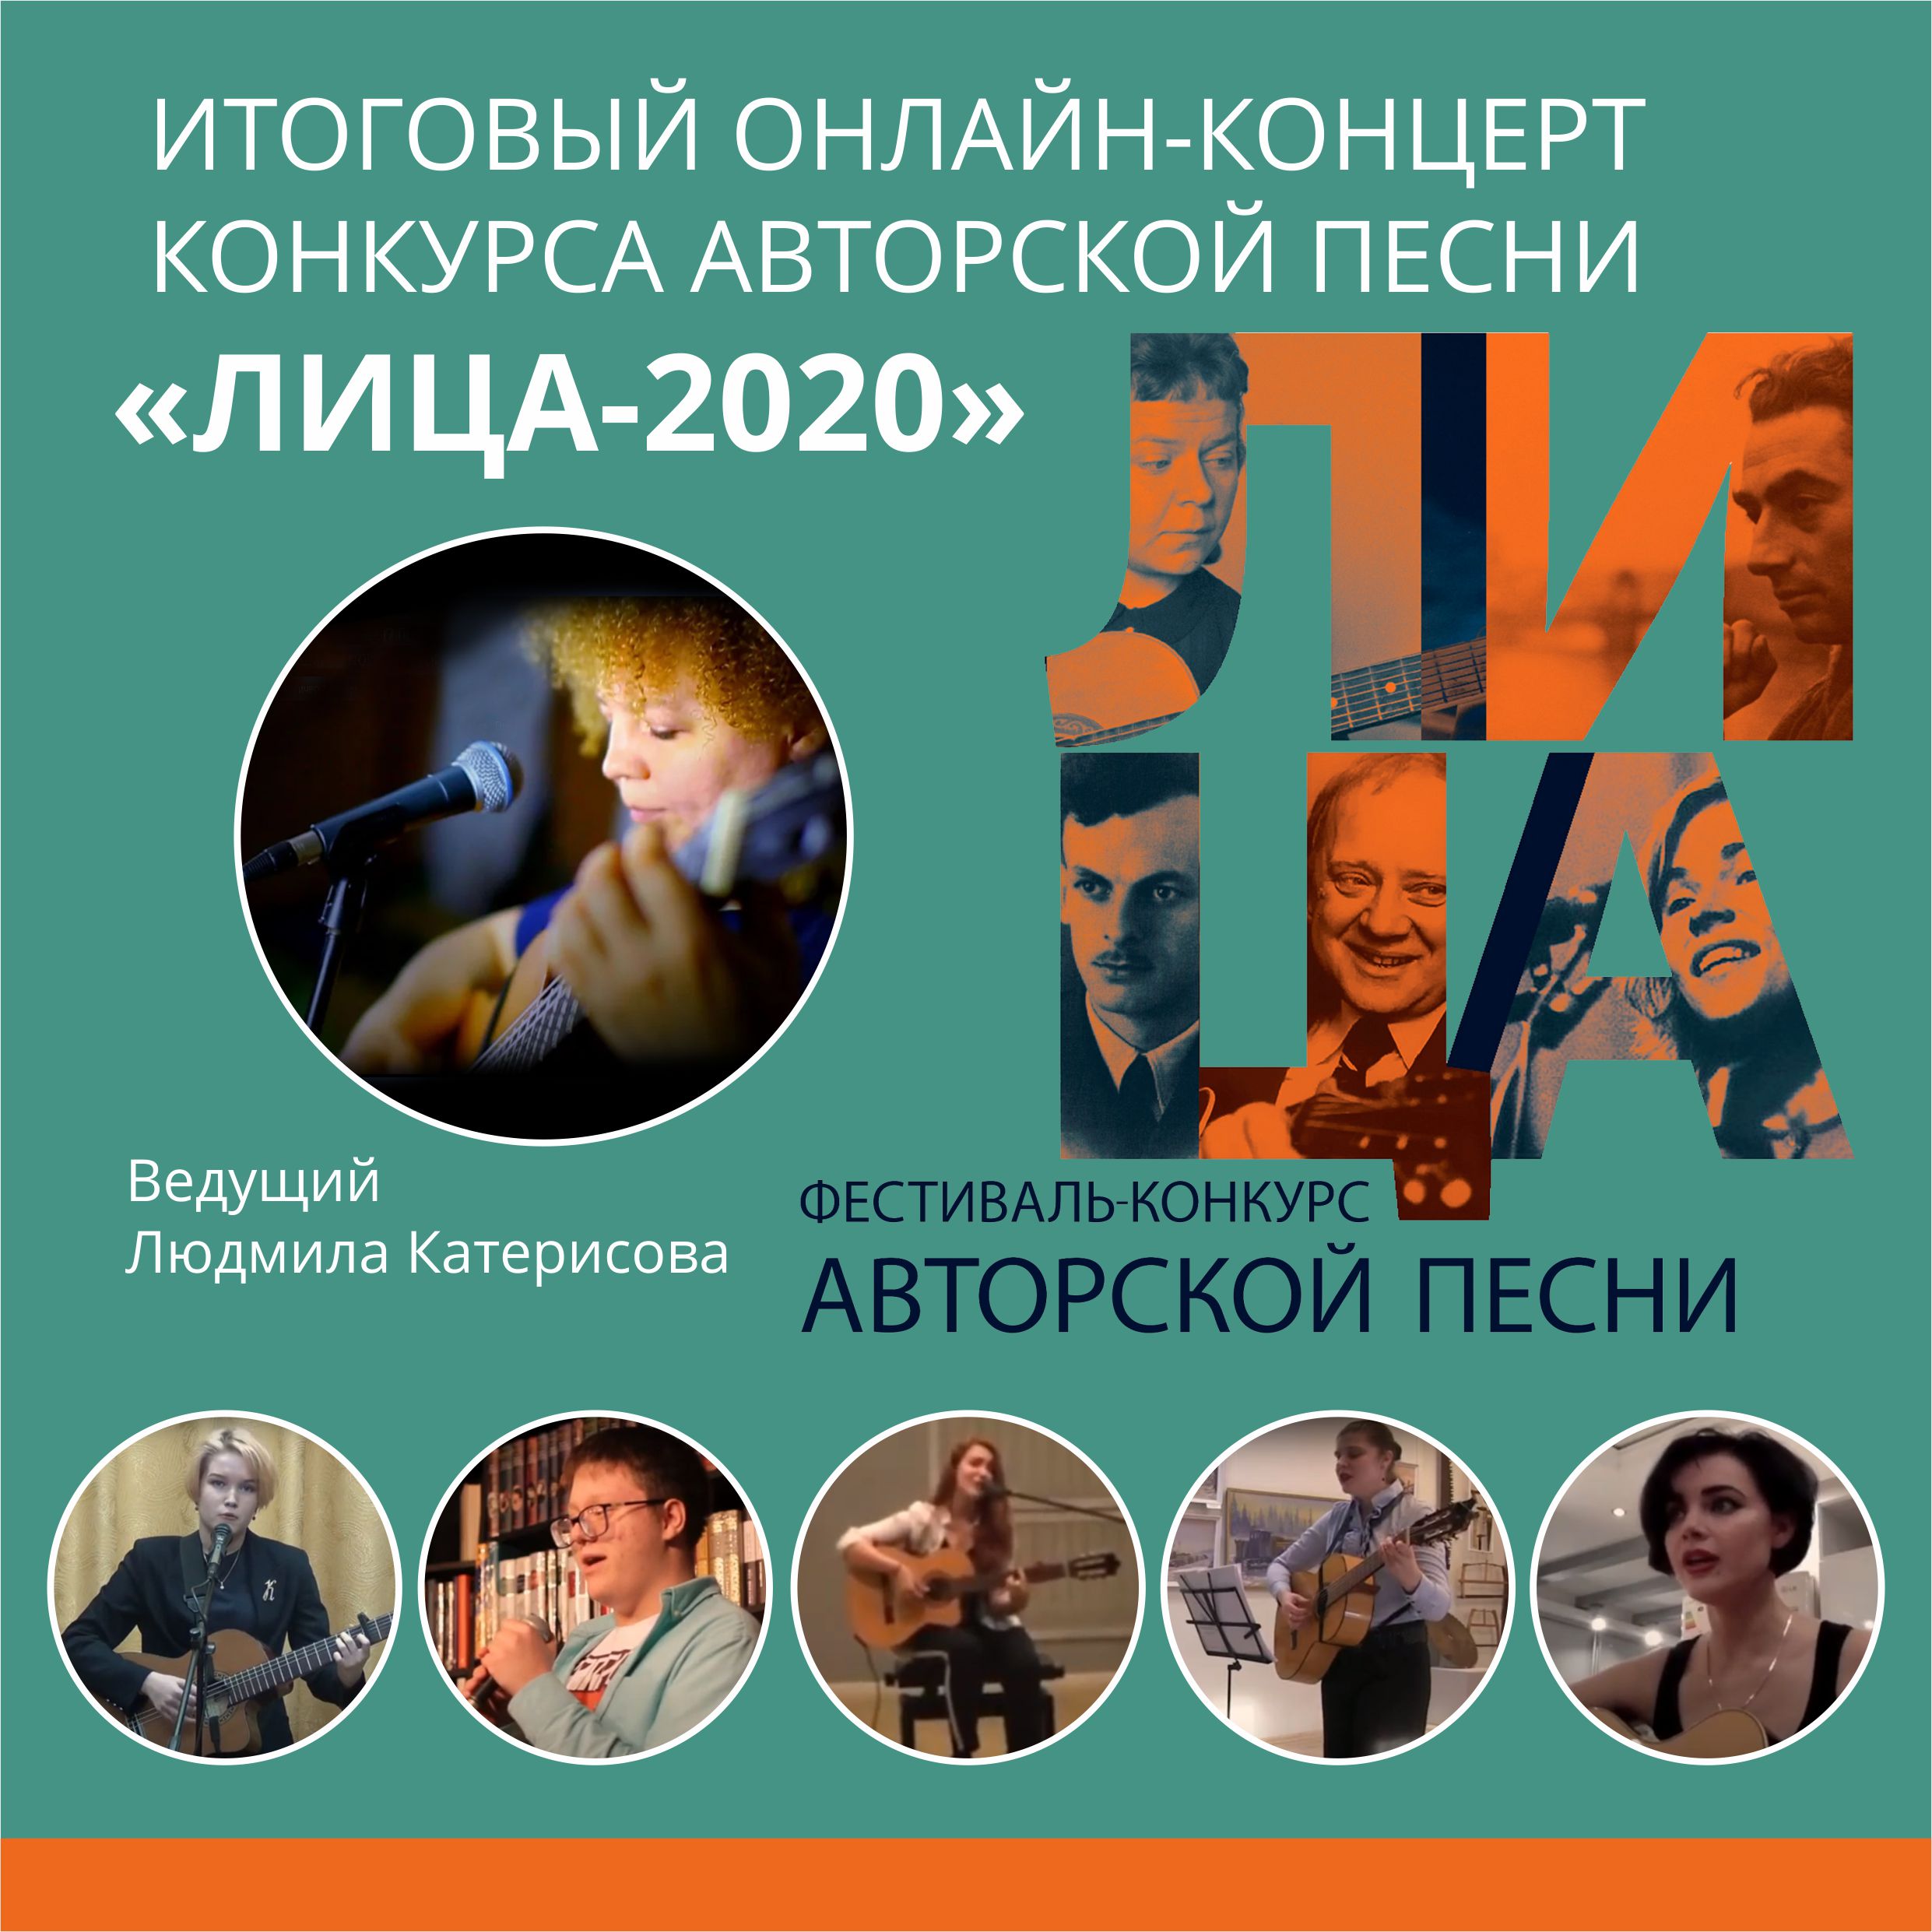 ОНЛАЙН-КОНЦЕРТ КОНКУРСА АВТОРСКОЙ ПЕСНИ “ЛИЦА-2020”